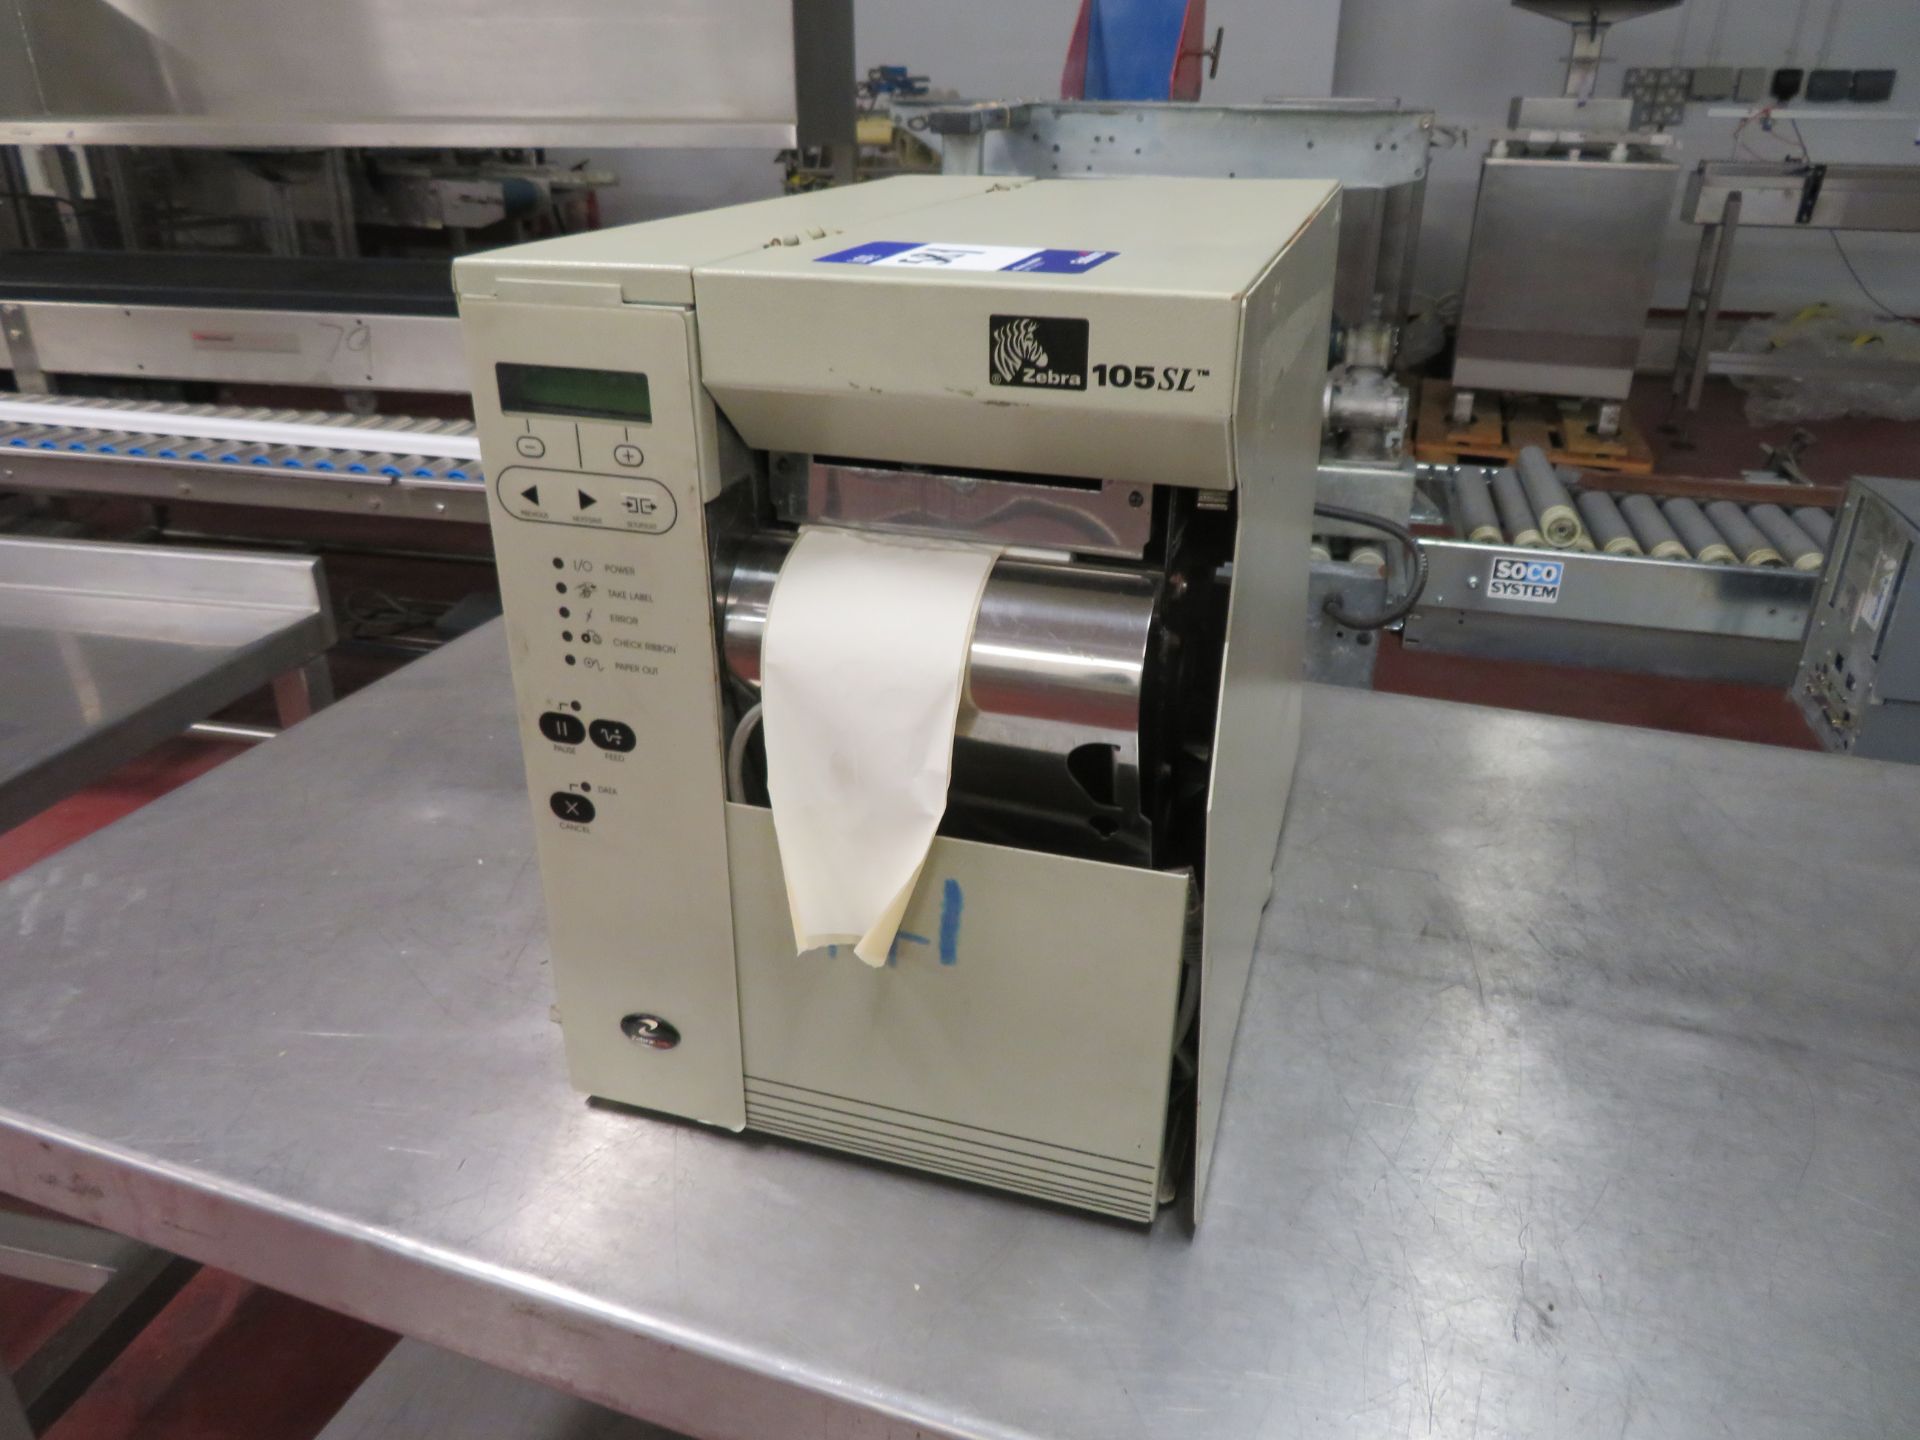 Zebra 105 SL Label Printer